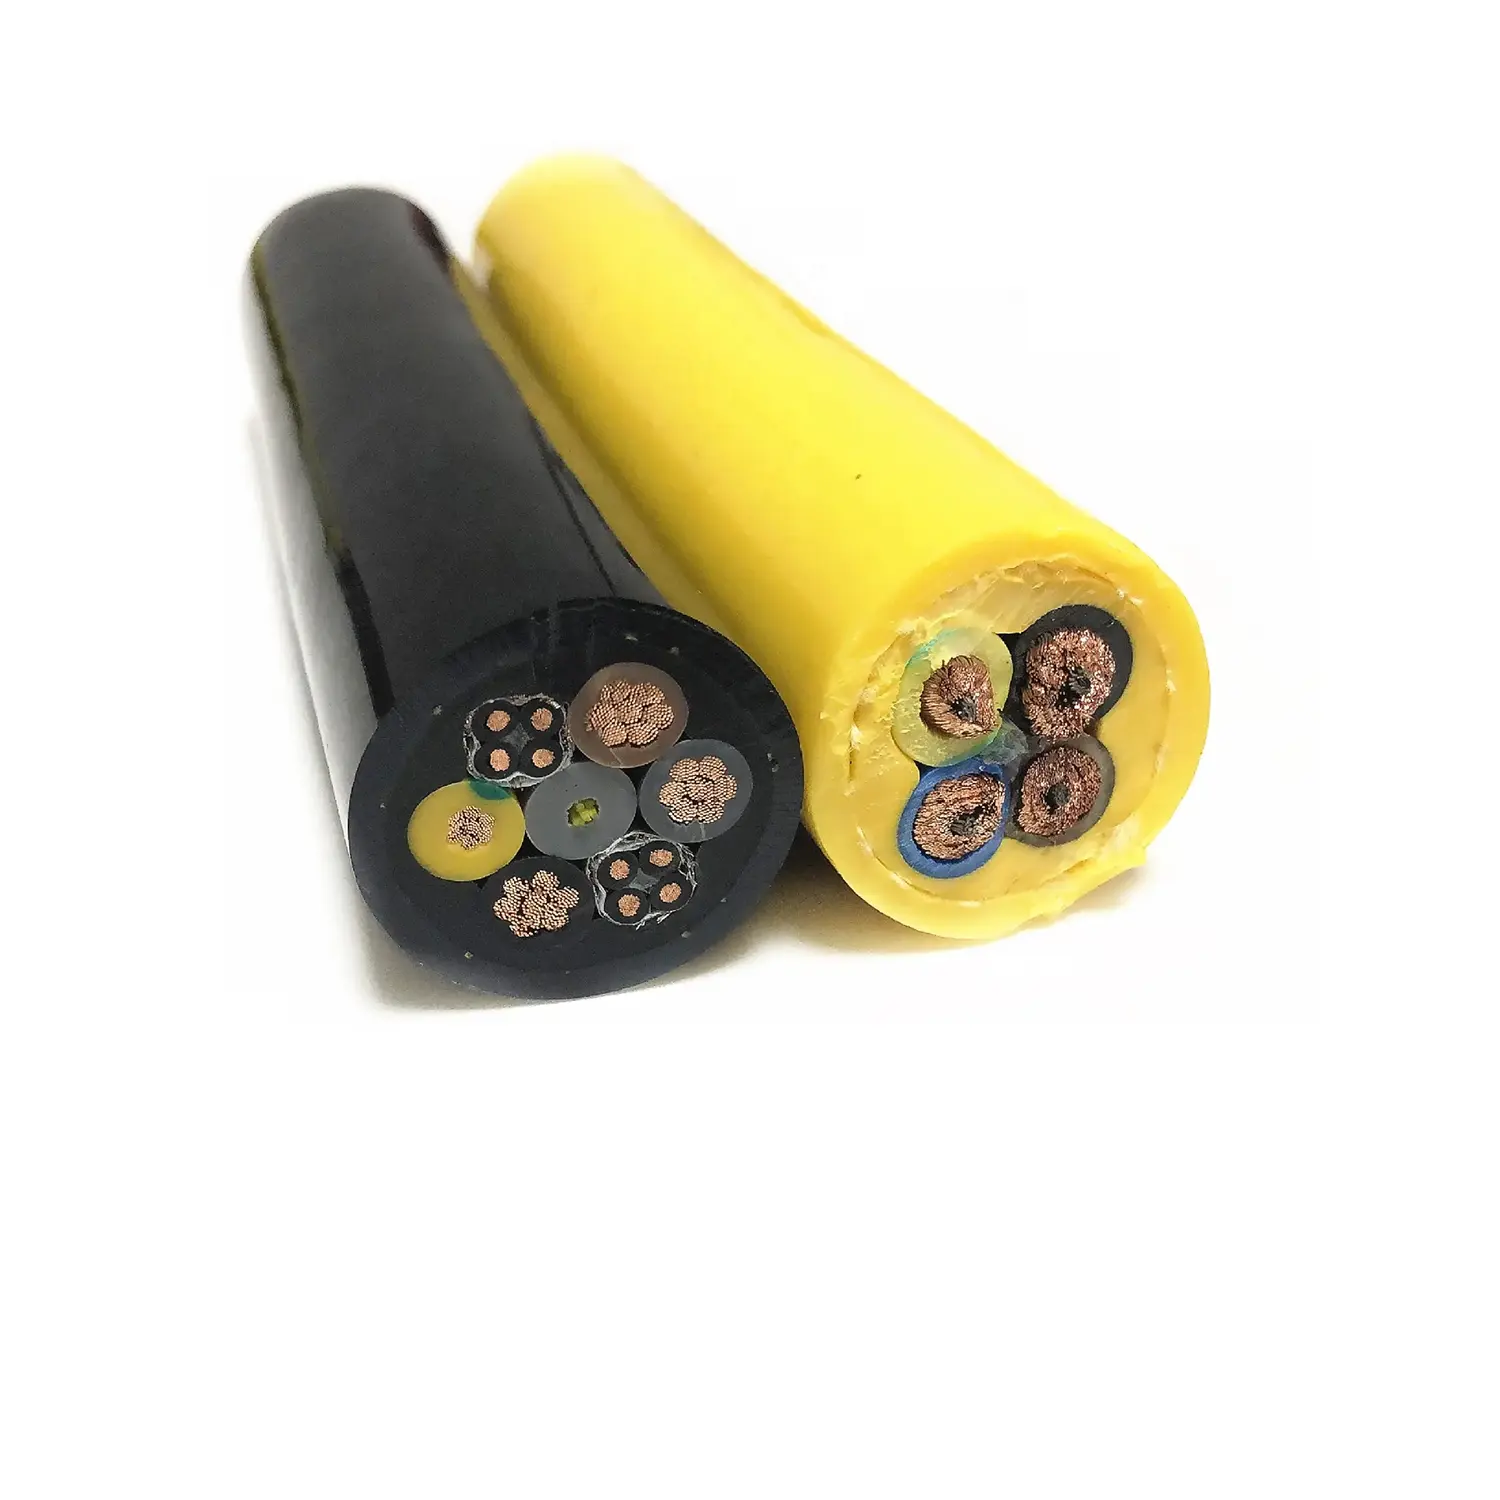 Износостойкие на растяжение и износостойкие вращающиеся барабанные кабели для подземных шлаковых экстракторов и горнодобывающего оборудования